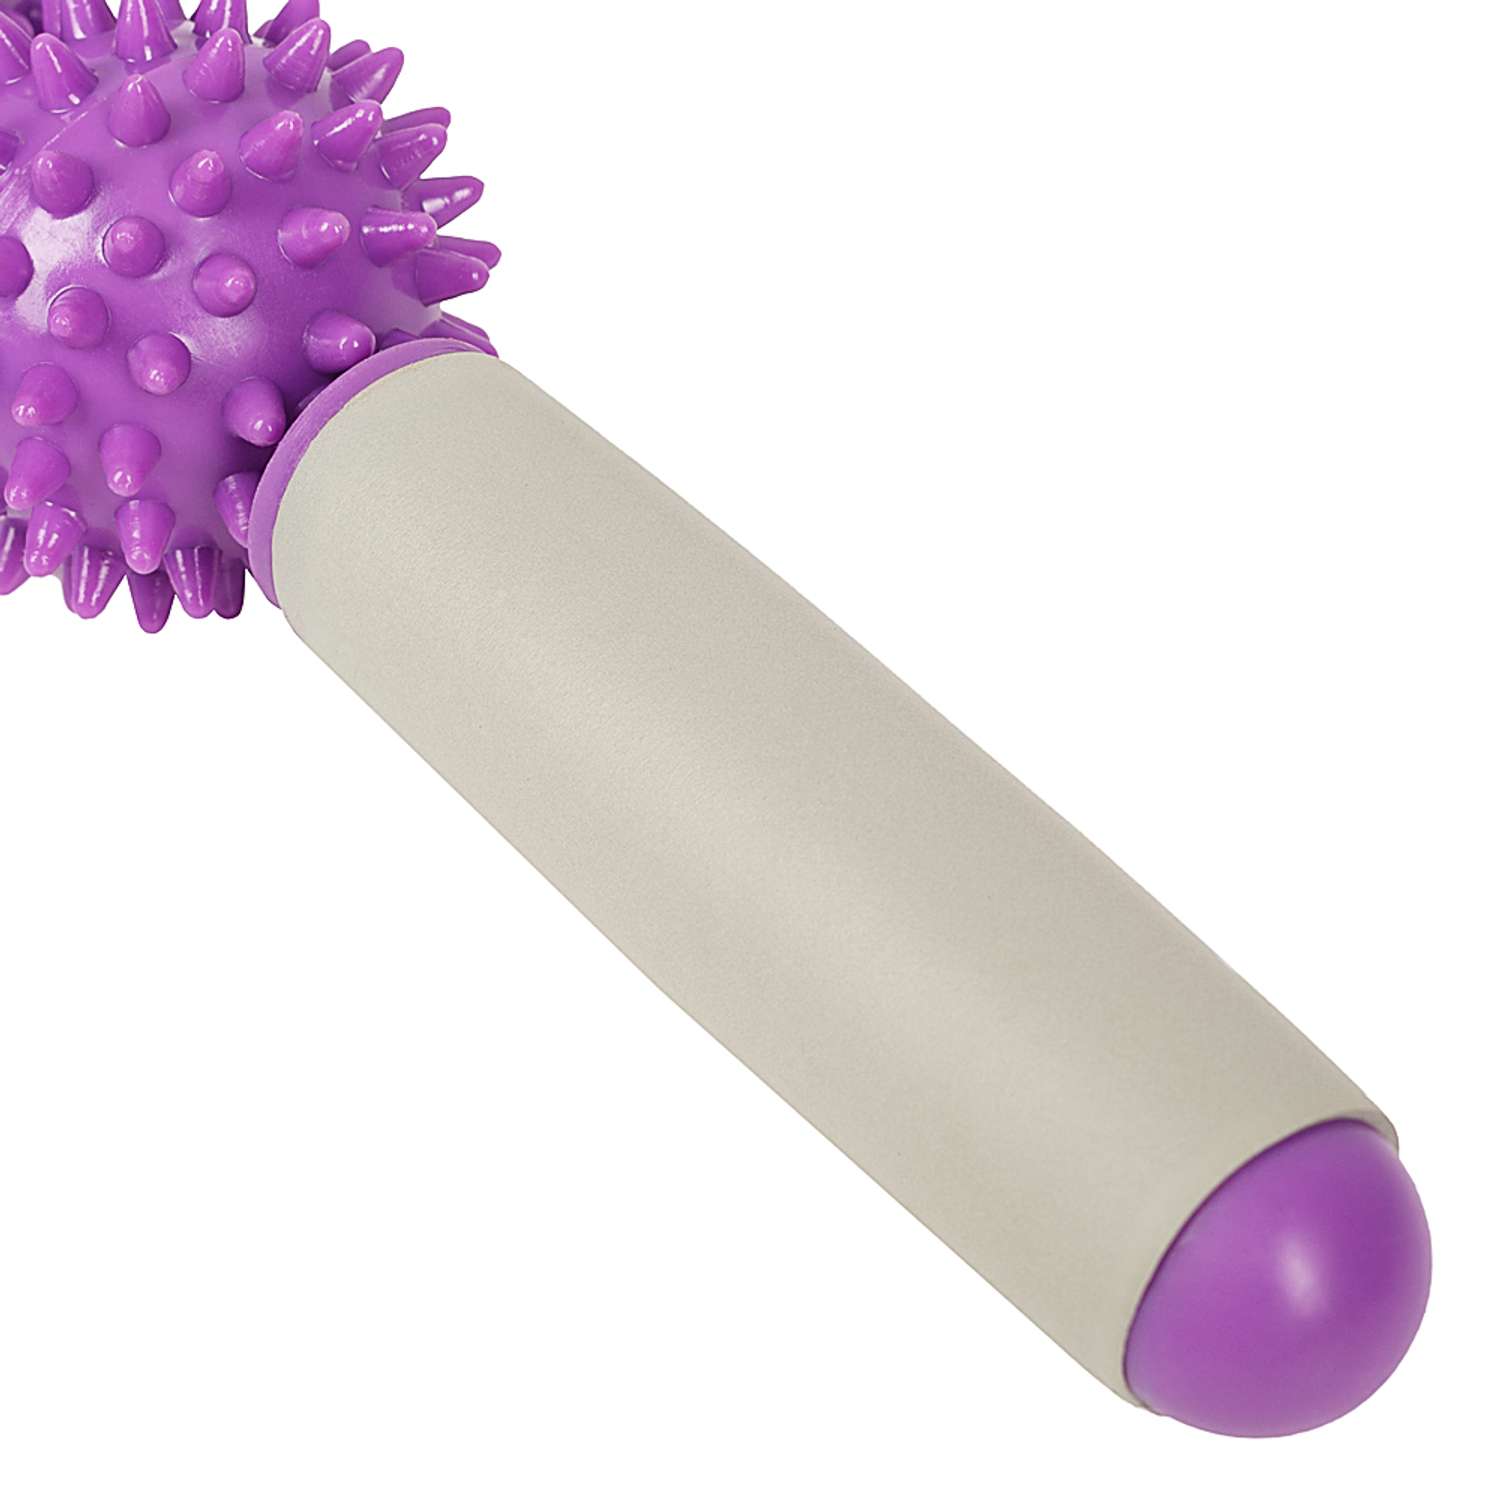 Массажёр ручной механический STRONG BODY МФР 5 массажных мячей на палке фиолетовый - фото 6